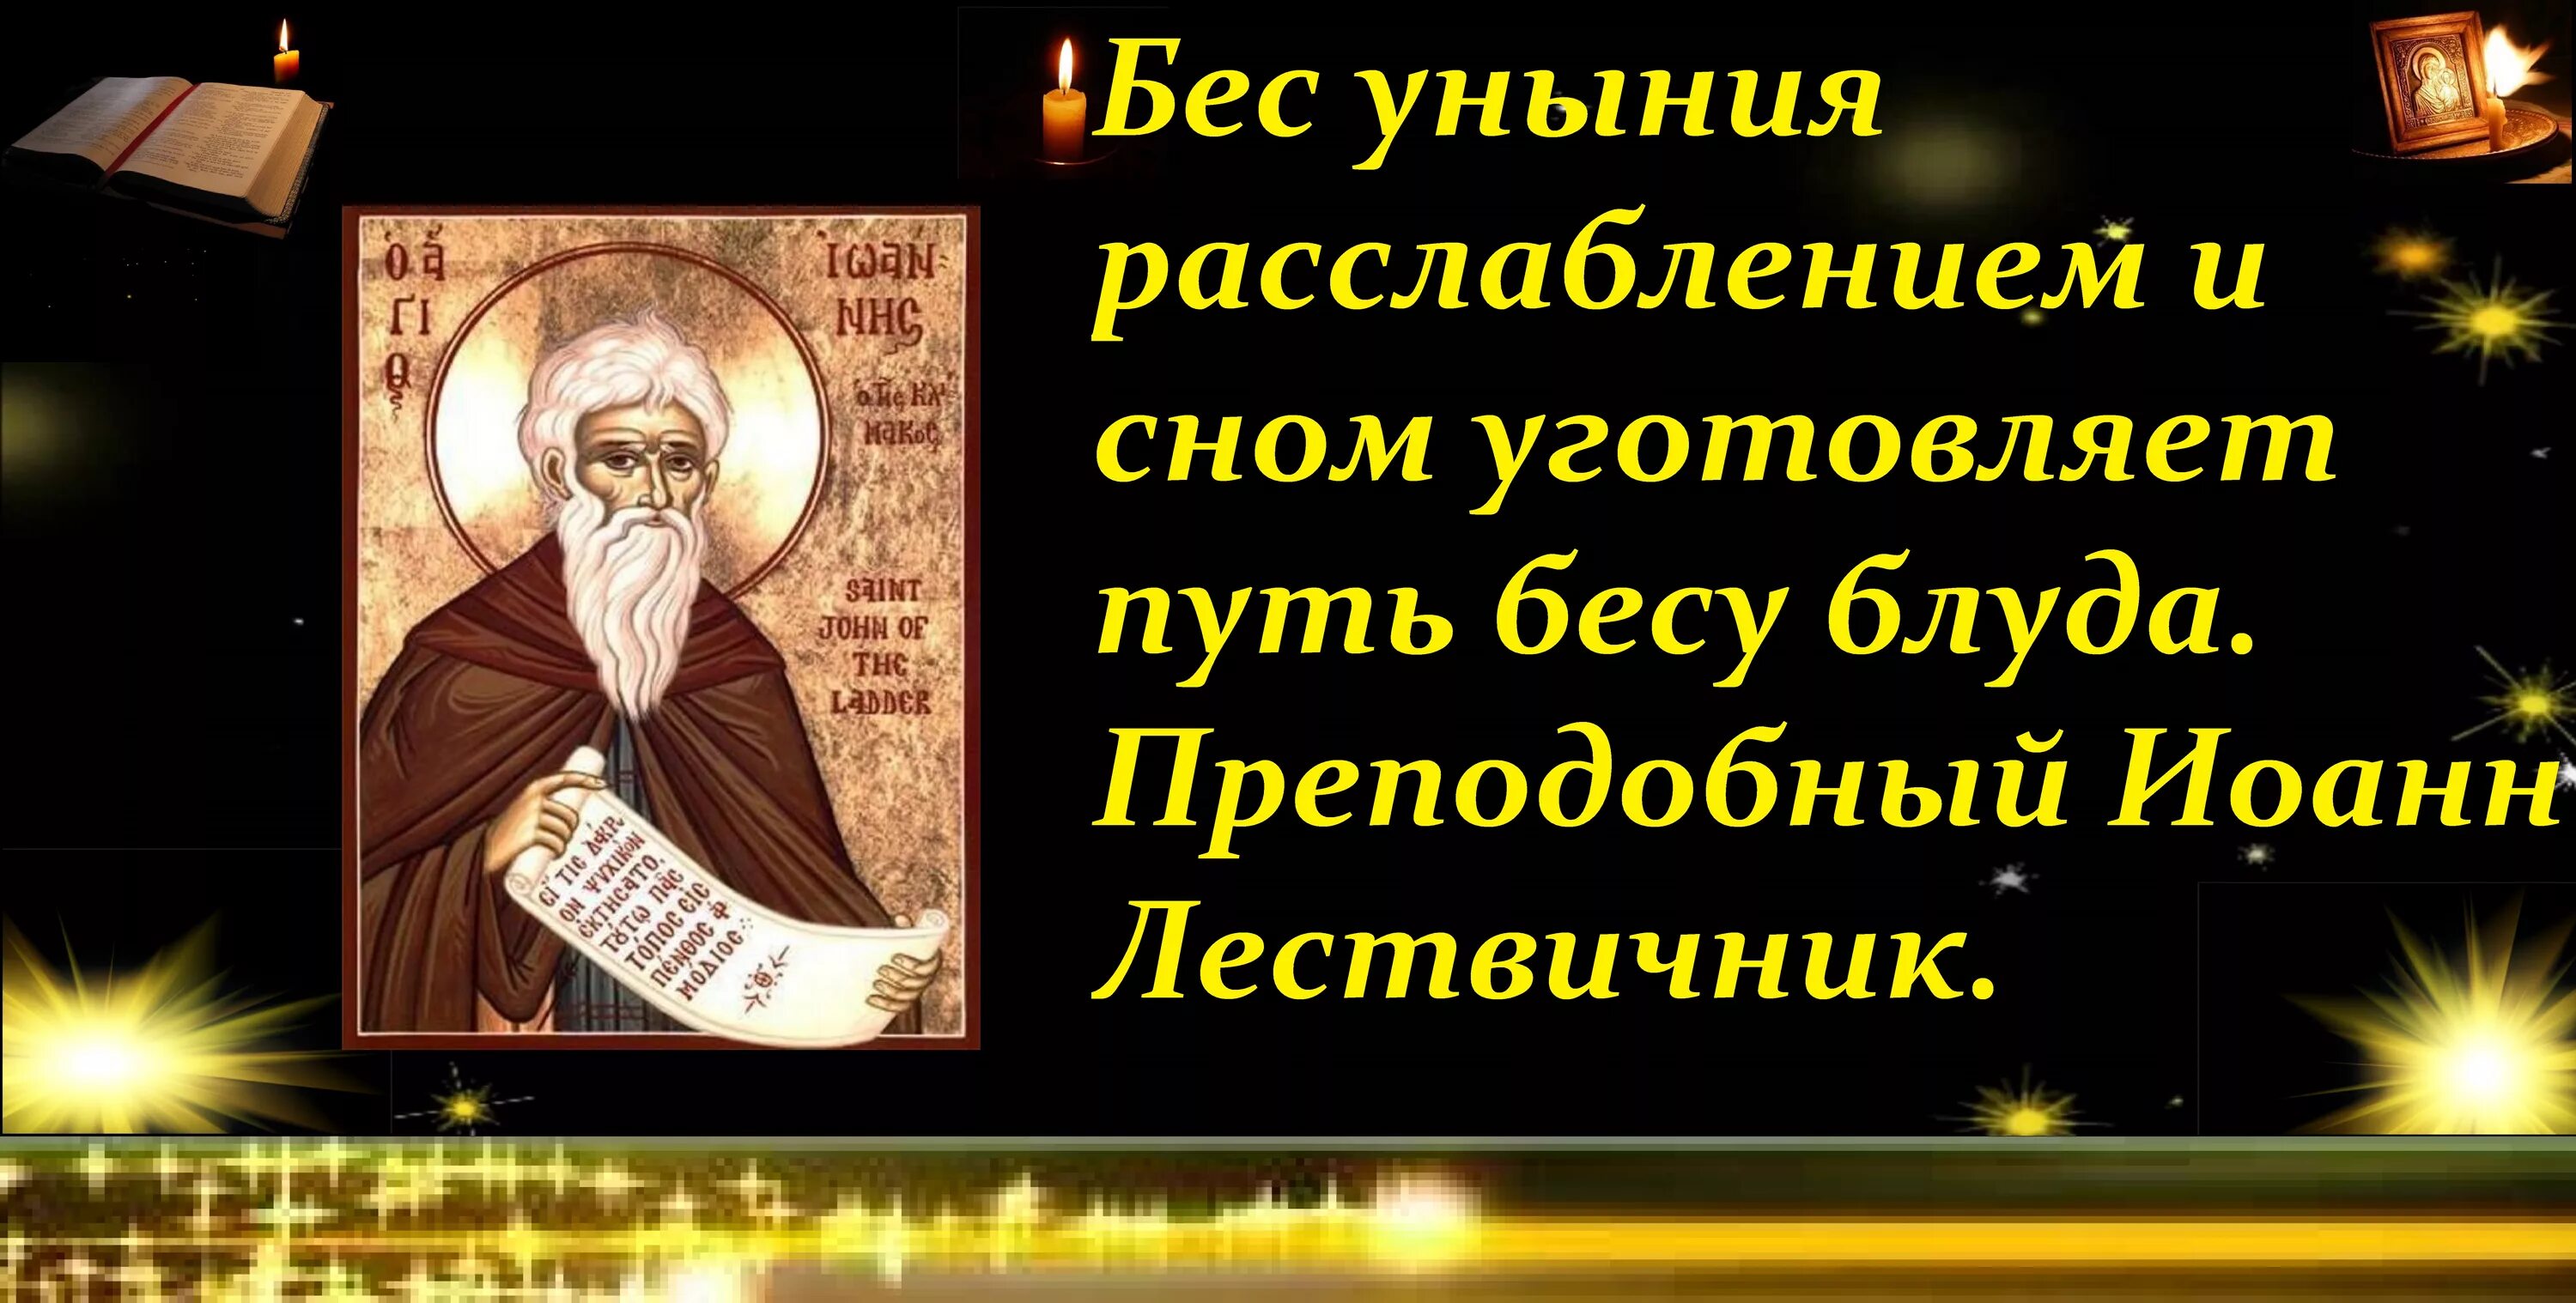 Уныние Православие. Святые и бесы. Святые о блуде. Православные святые о блуде. Как избавиться от уныния